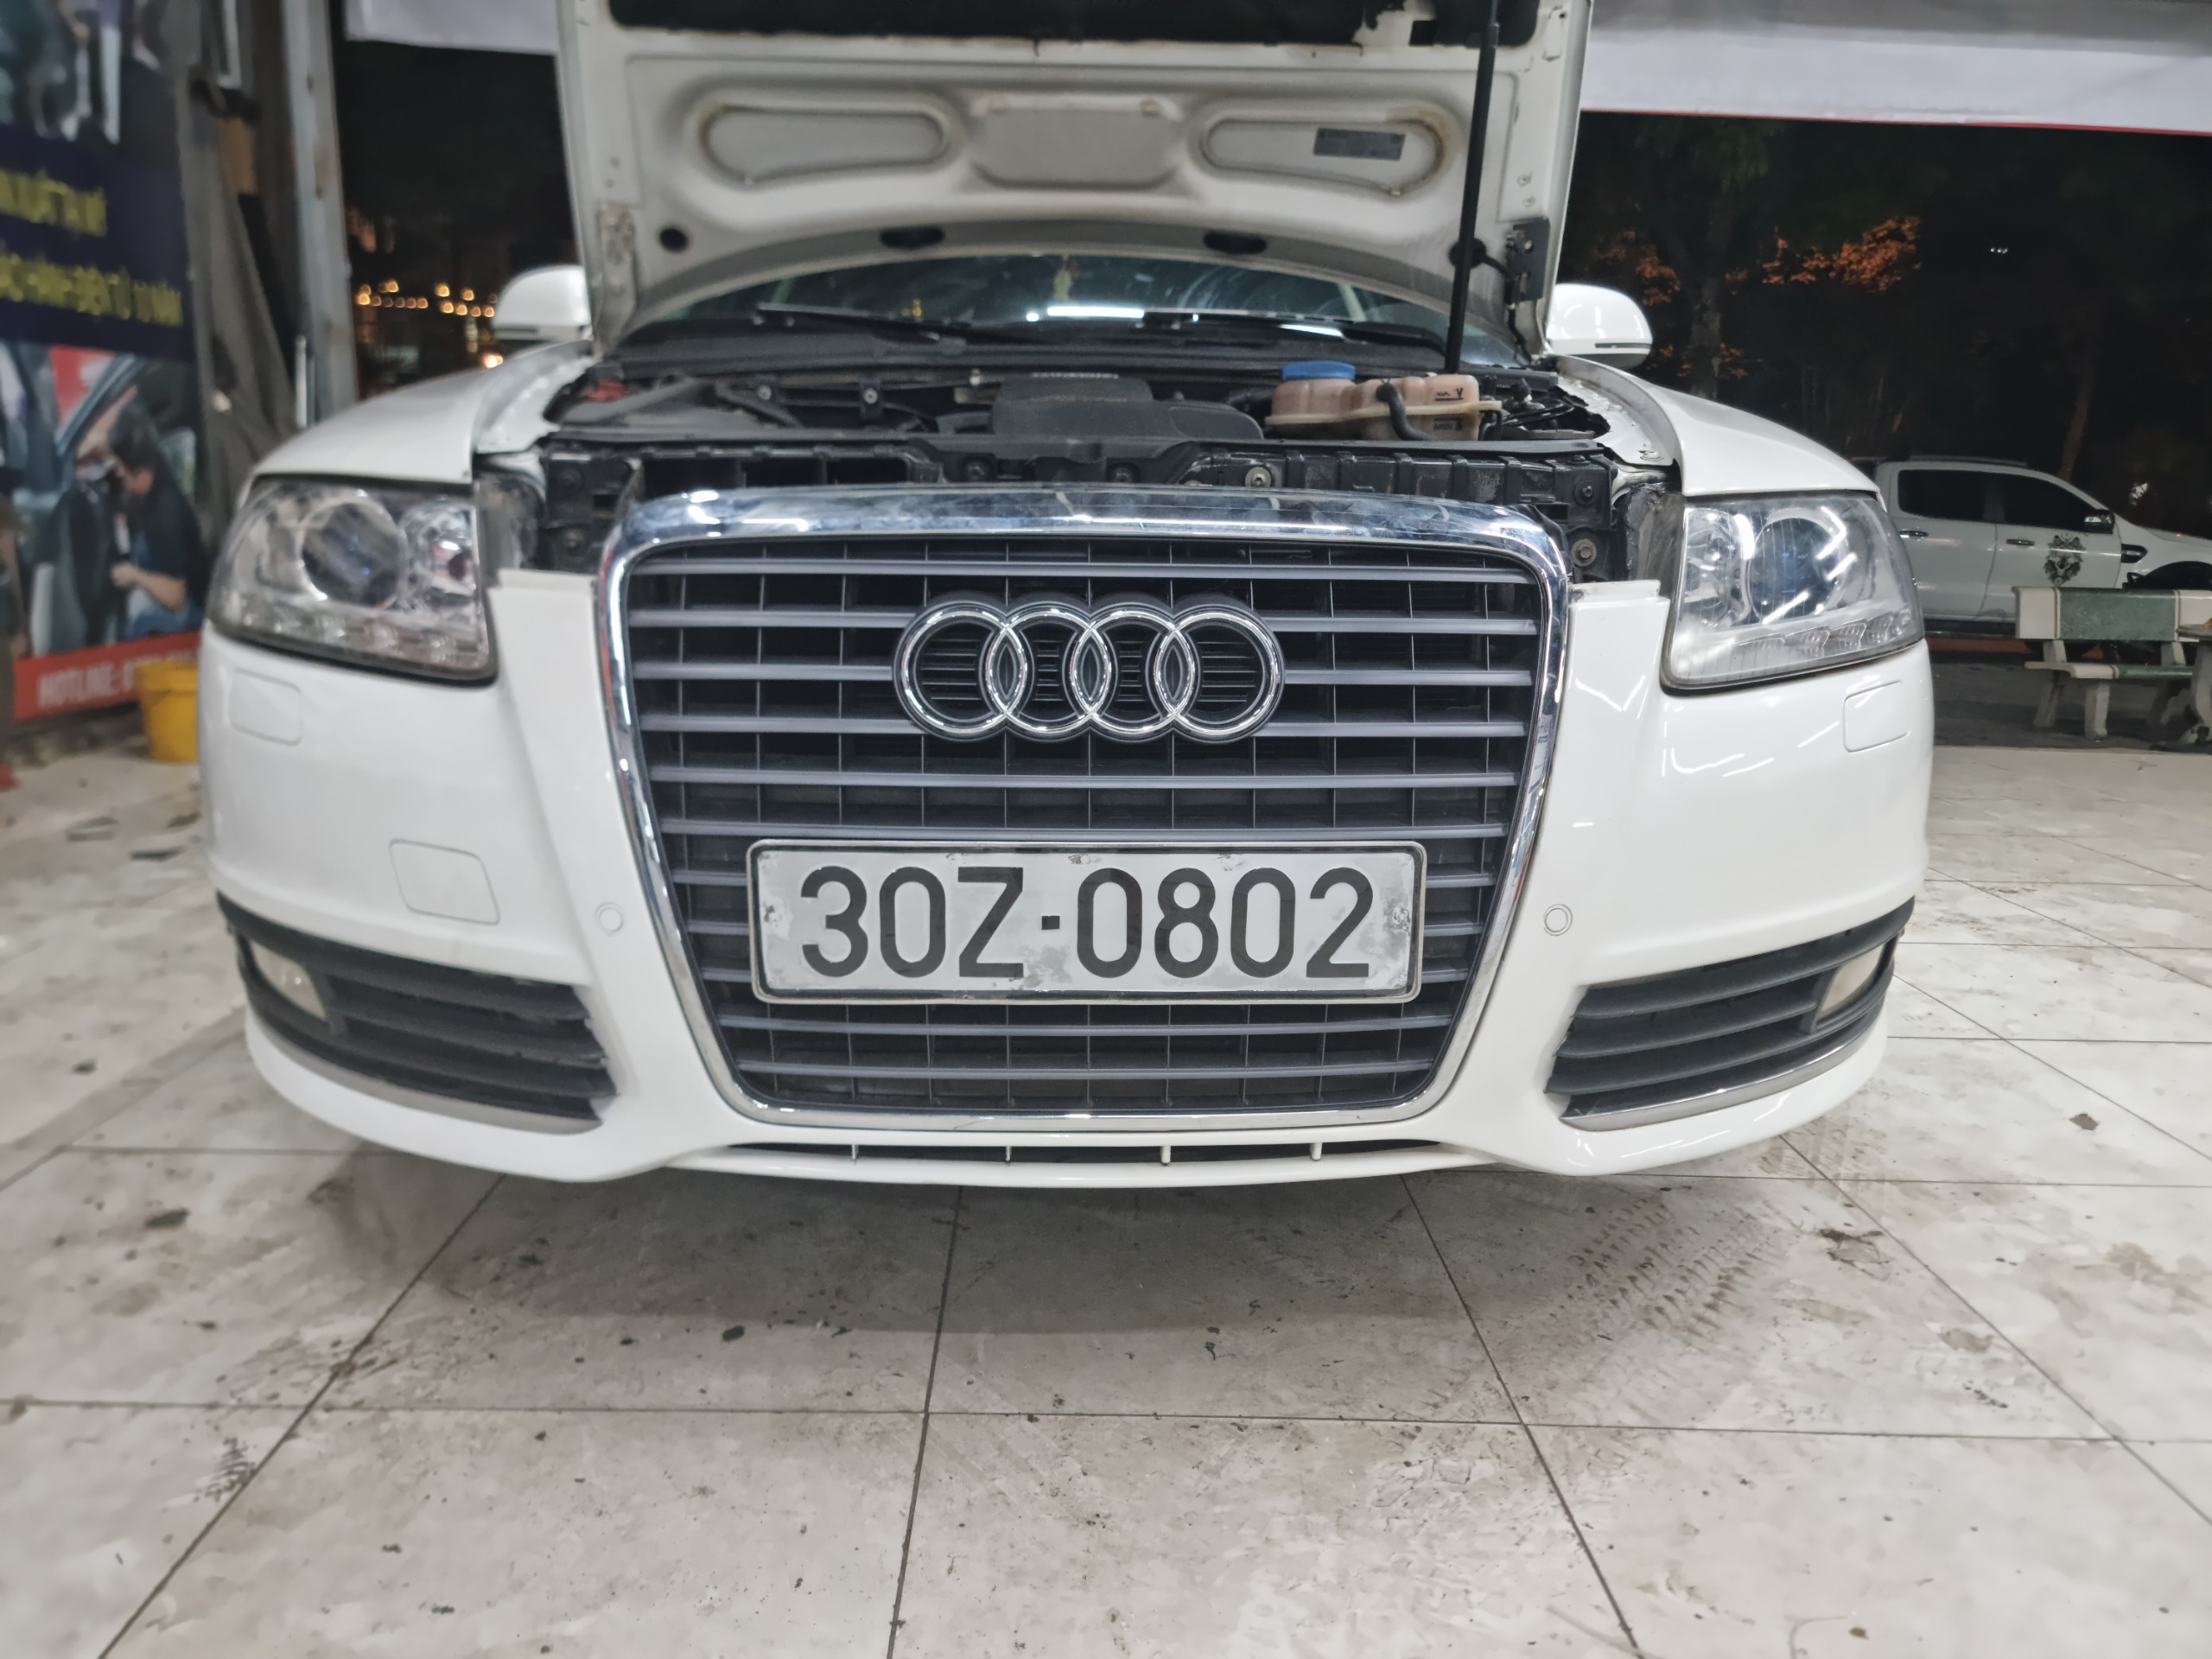 Nâng cấp đèn tăng sáng cho Audi A6 - Cải thiện Tầm Nhìn - Văn Minh - An Toàn